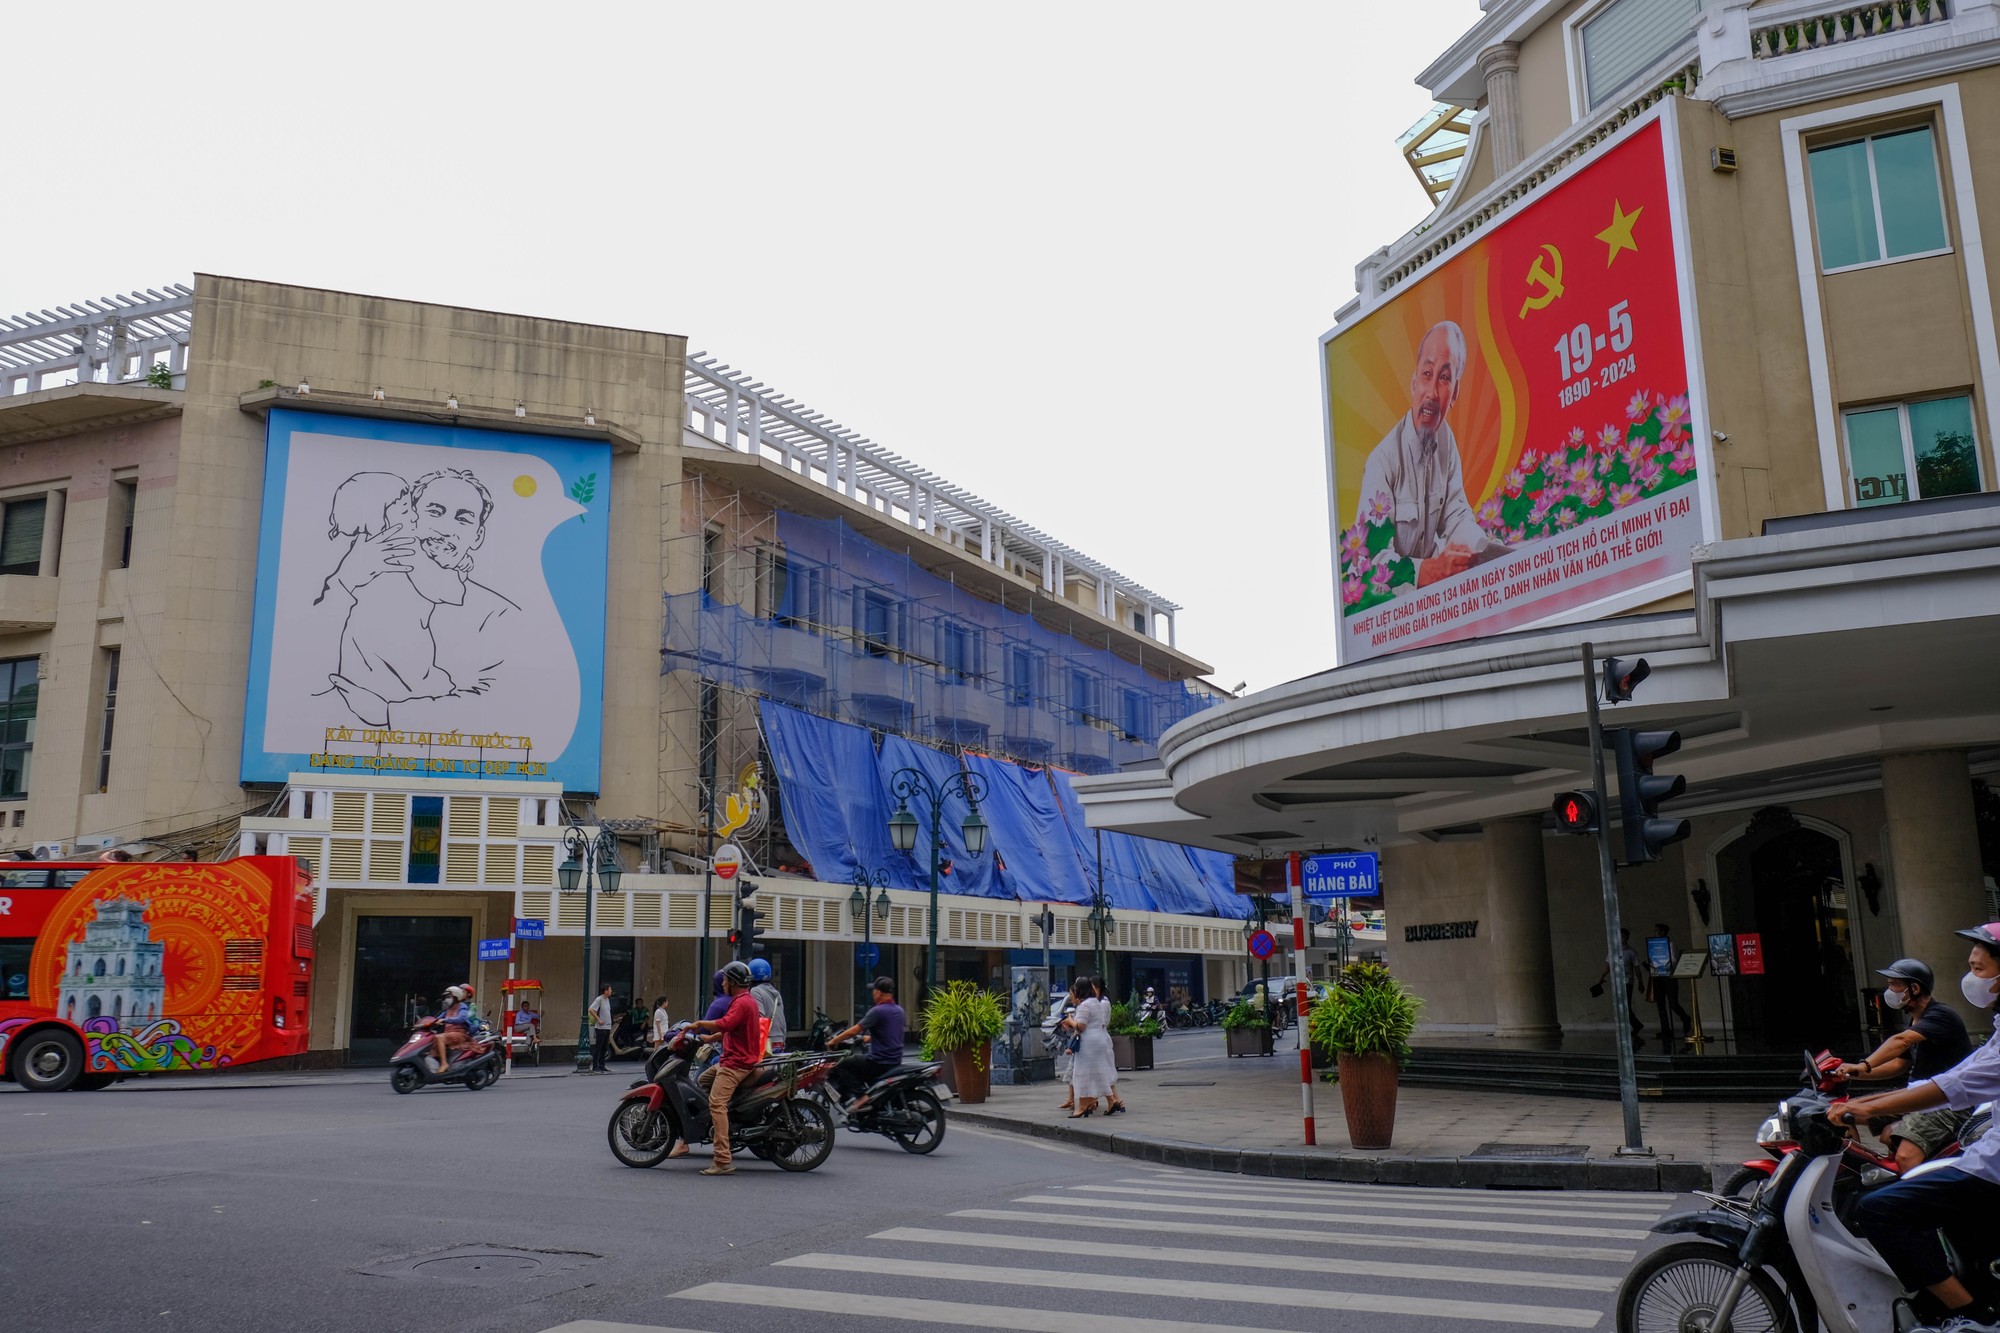 Phố phường khu trung tâm Hà Nội được trang hoàng băng rôn, áp phích, cờ đỏ sao vàng kỷ niệm 134 năm ngày sinh Chủ tịch Hồ Chí Minh (19/5/1890-19/5/2024). Ảnh: Lê An/Mekong ASEAN.